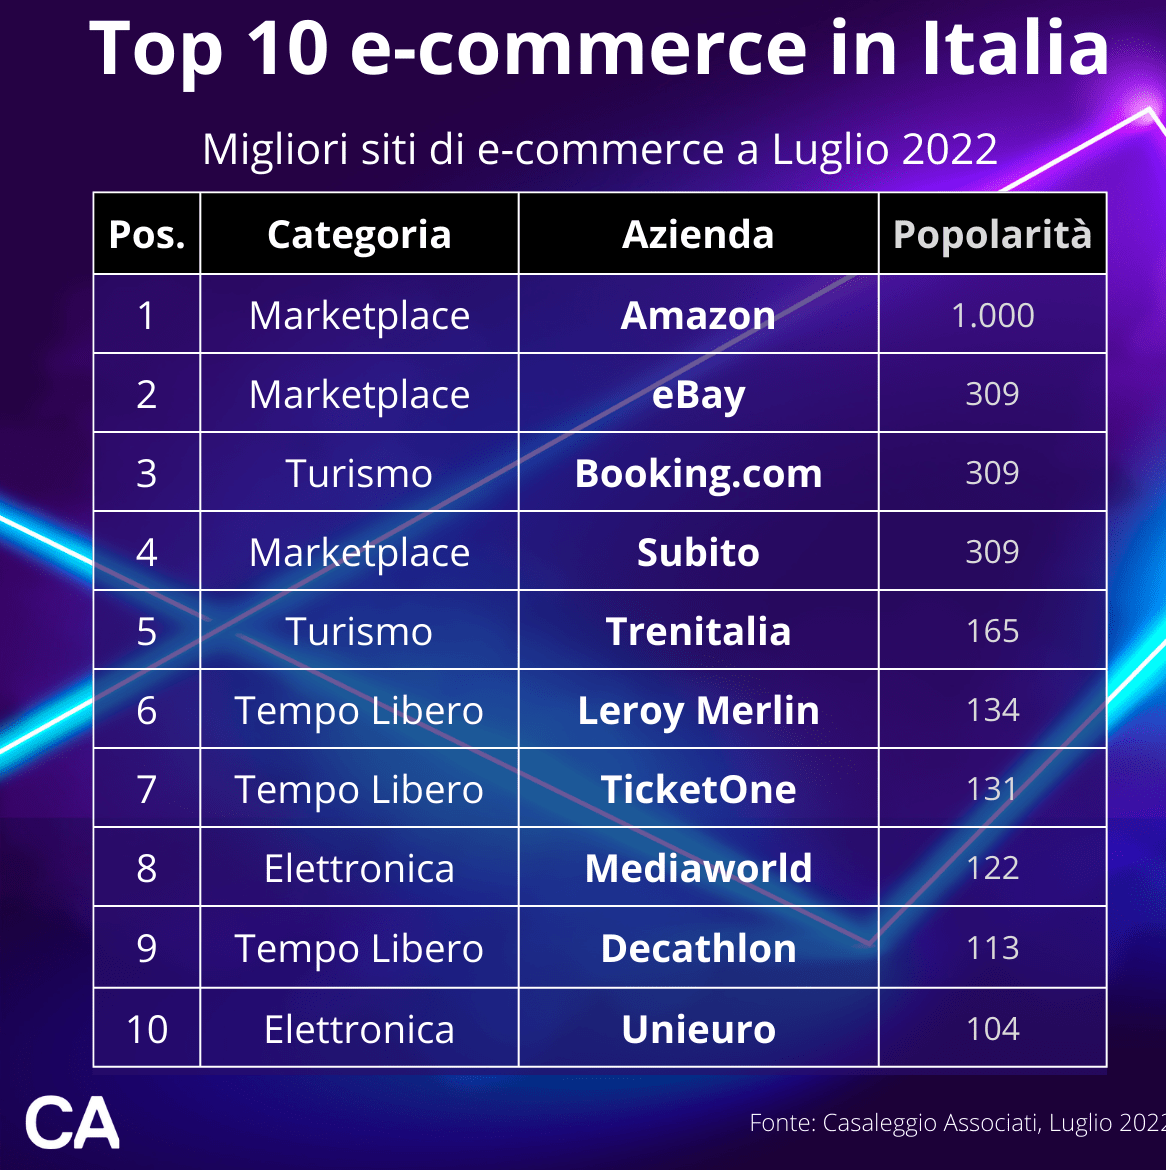 Ecco la classifica e-commerce in Italia